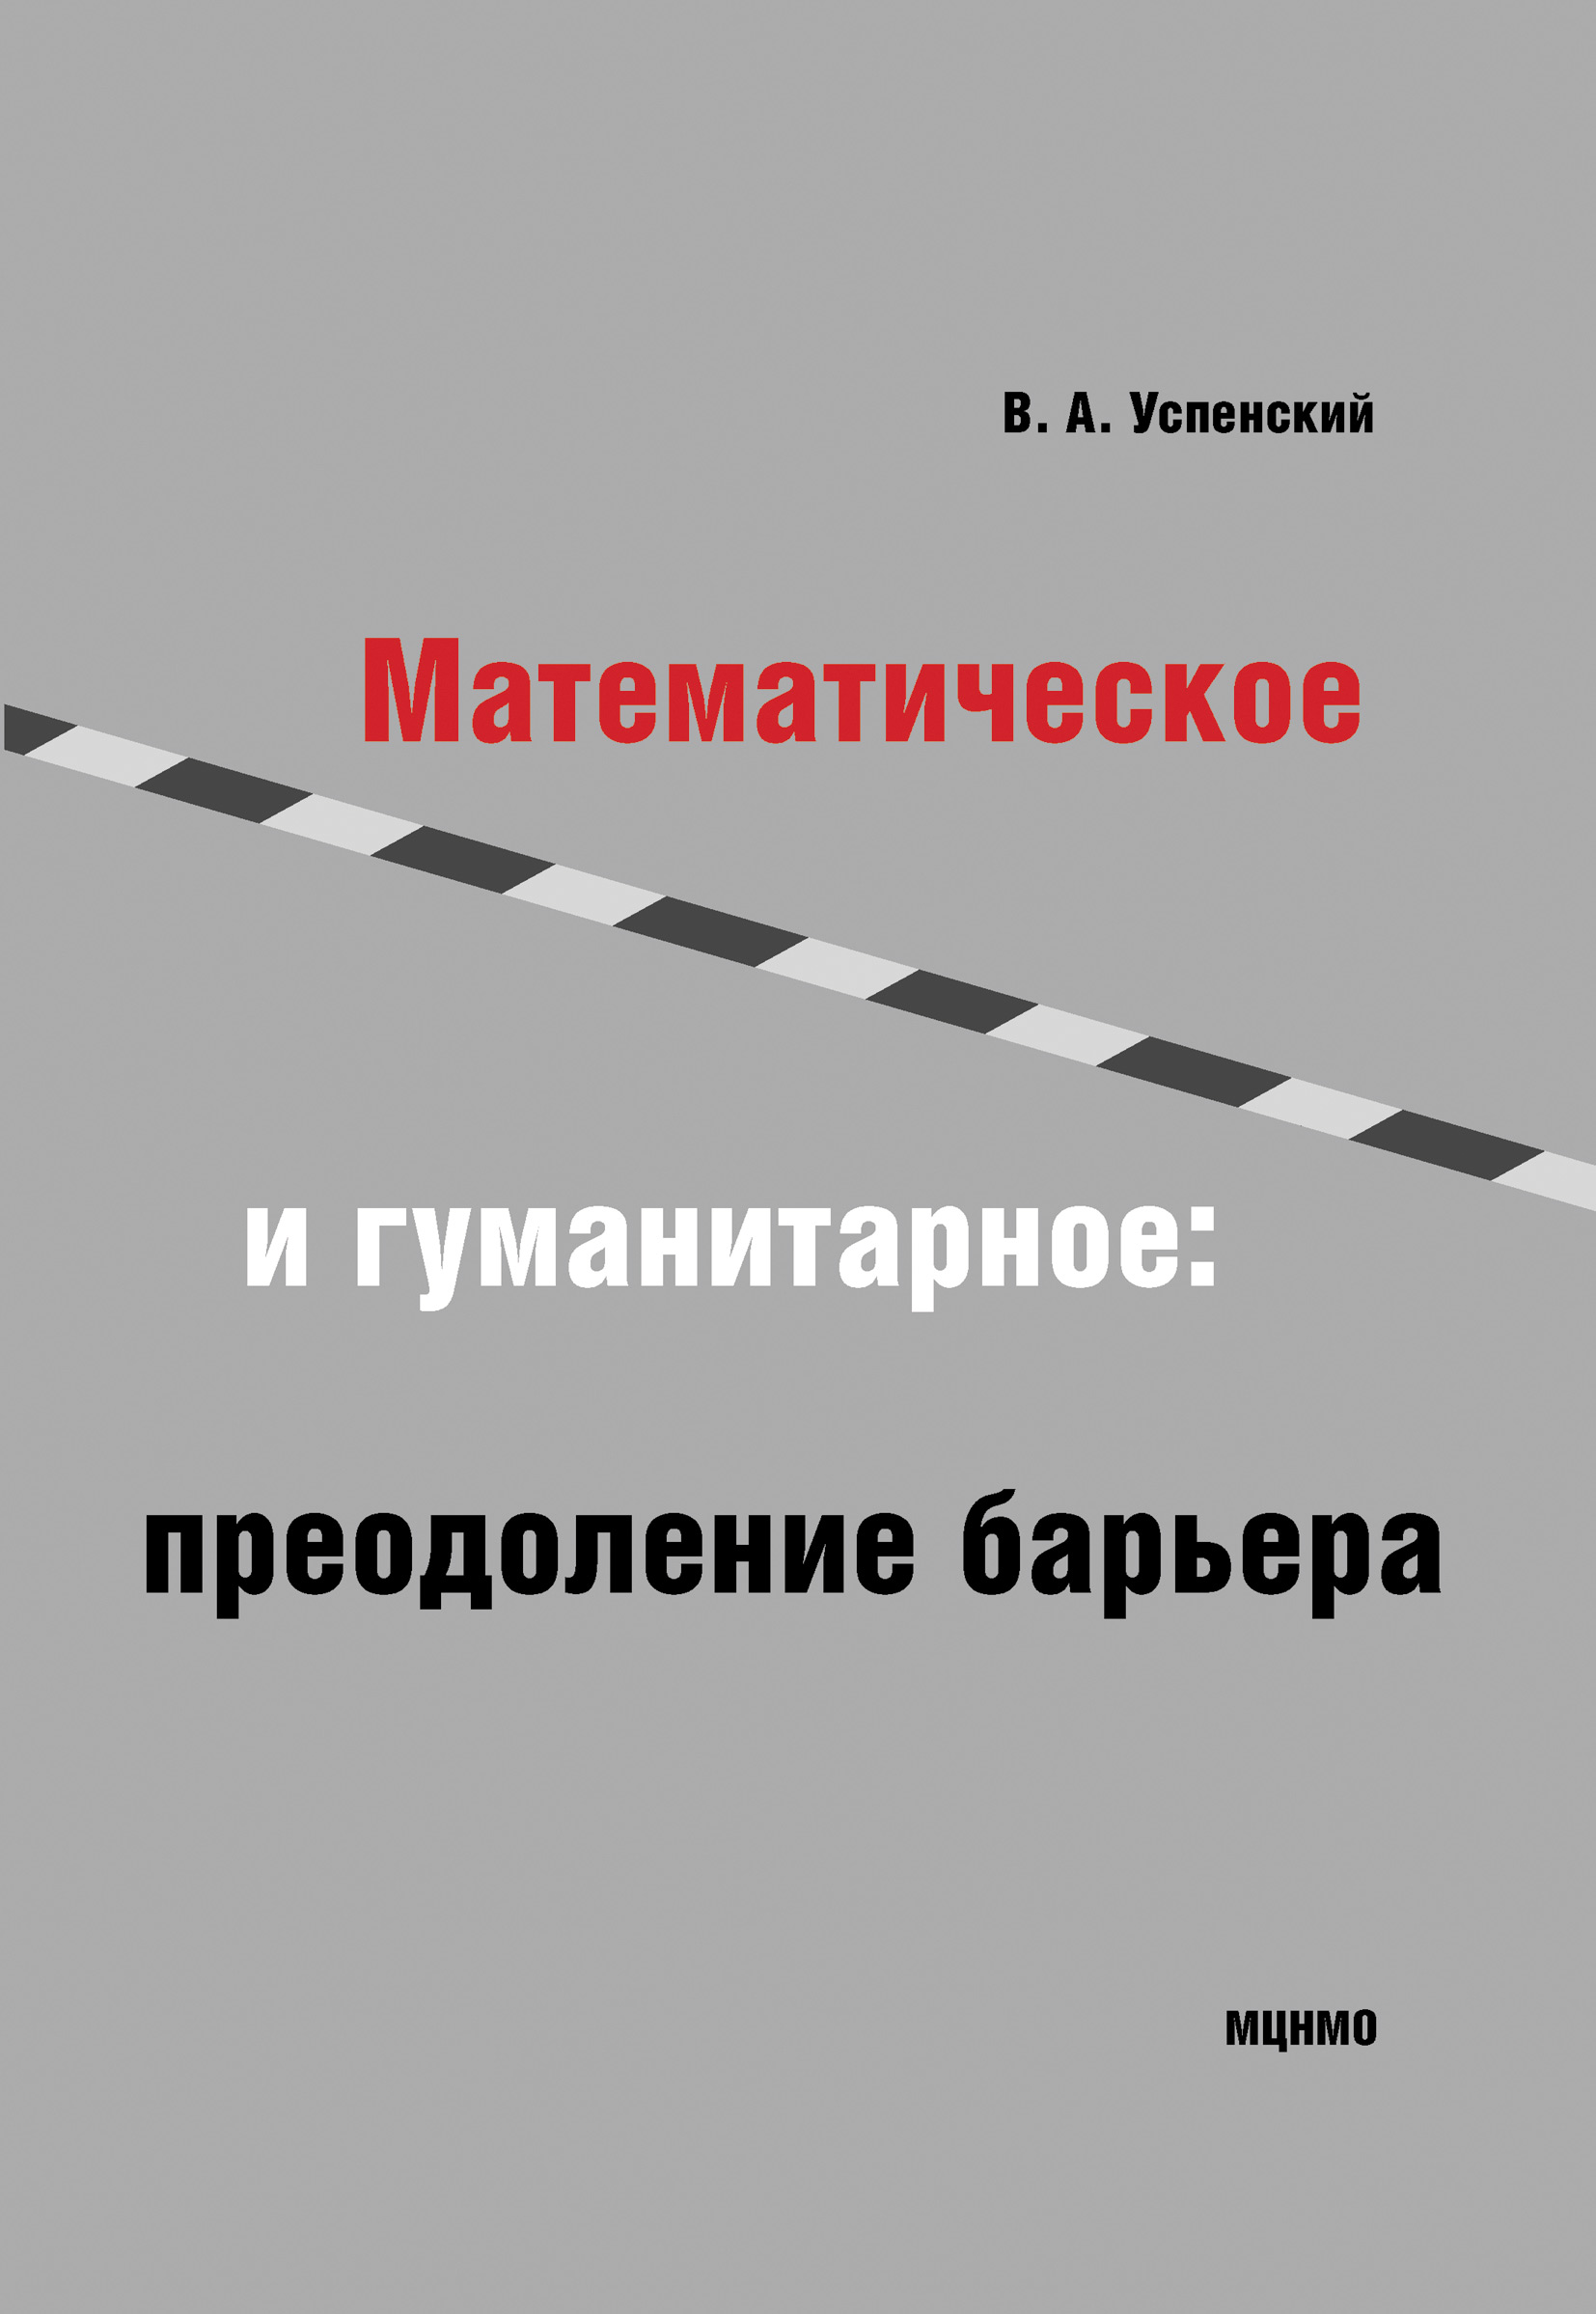 Книга Математическое и гуманитарное. Преодоление барьера из серии , созданная Владимир Успенский, может относится к жанру Математика. Стоимость книги Математическое и гуманитарное. Преодоление барьера  с идентификатором 11647752 составляет 54.99 руб.